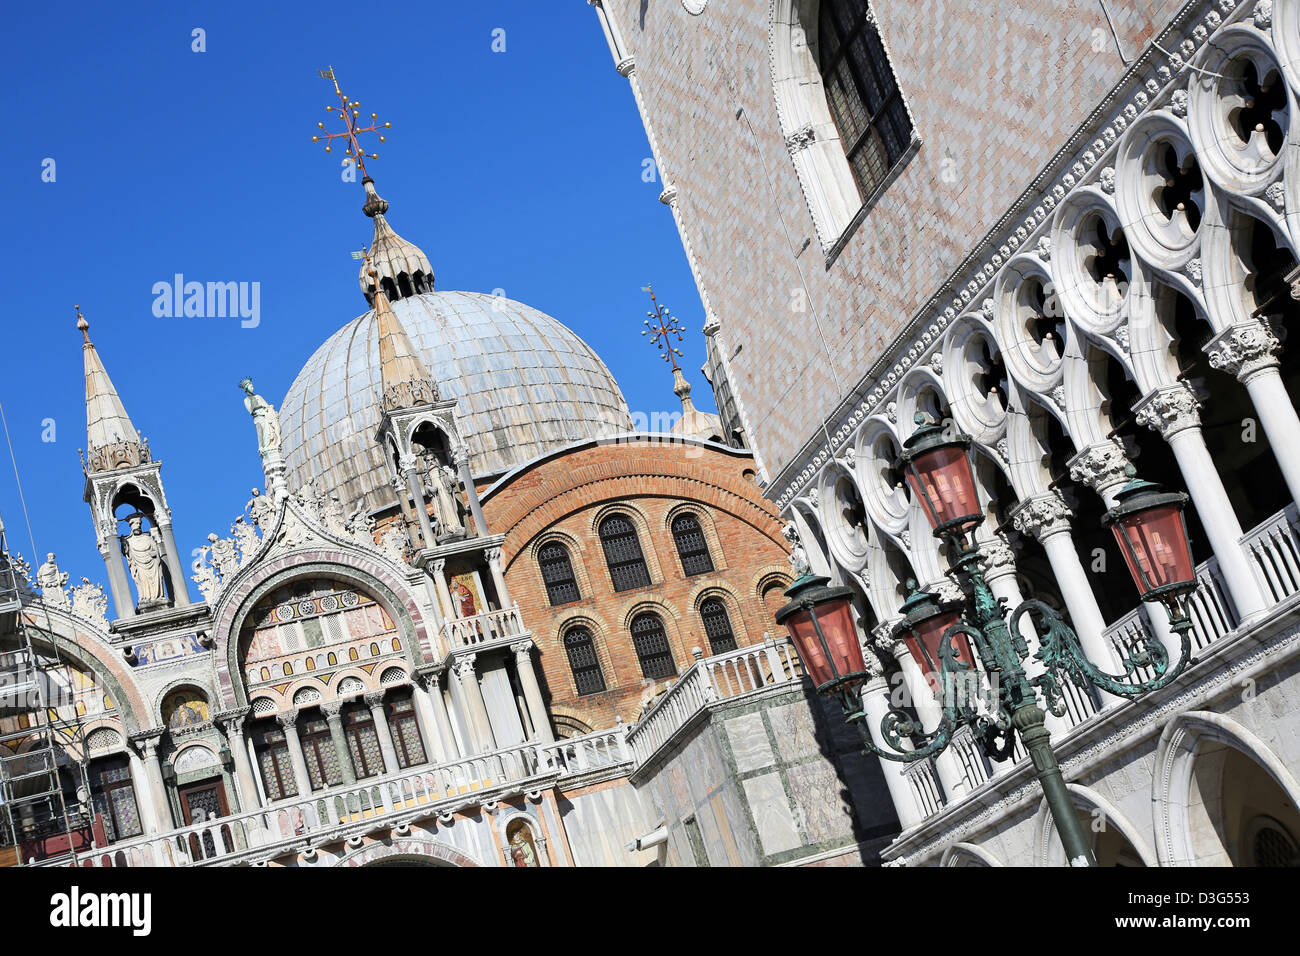 La arquitectura bizantina de la Basilica di San Marco, la Catedral de San Marcos, en la Plaza de San Marcos (Piazza), en Venecia, Italia Foto de stock